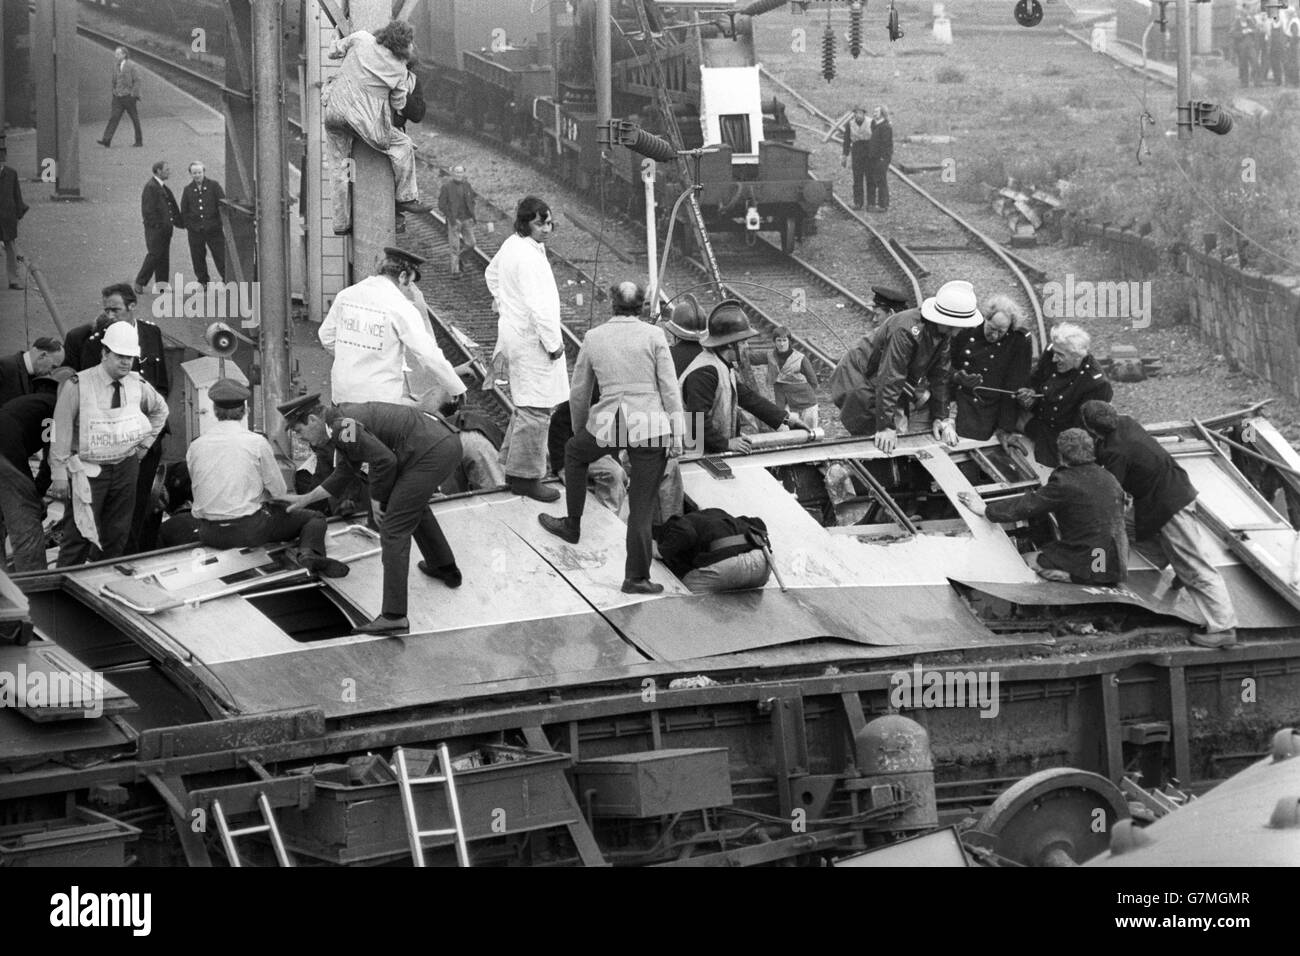 Katastrophen und Unfälle - Eisenbahnunfall von Nuneaton - Warwickshire, England. Rettungskräfte klettern über die entgleisten Londoner Wagen Euston-Glasgow, die nach eingesperrten Passagieren suchen. Stockfoto